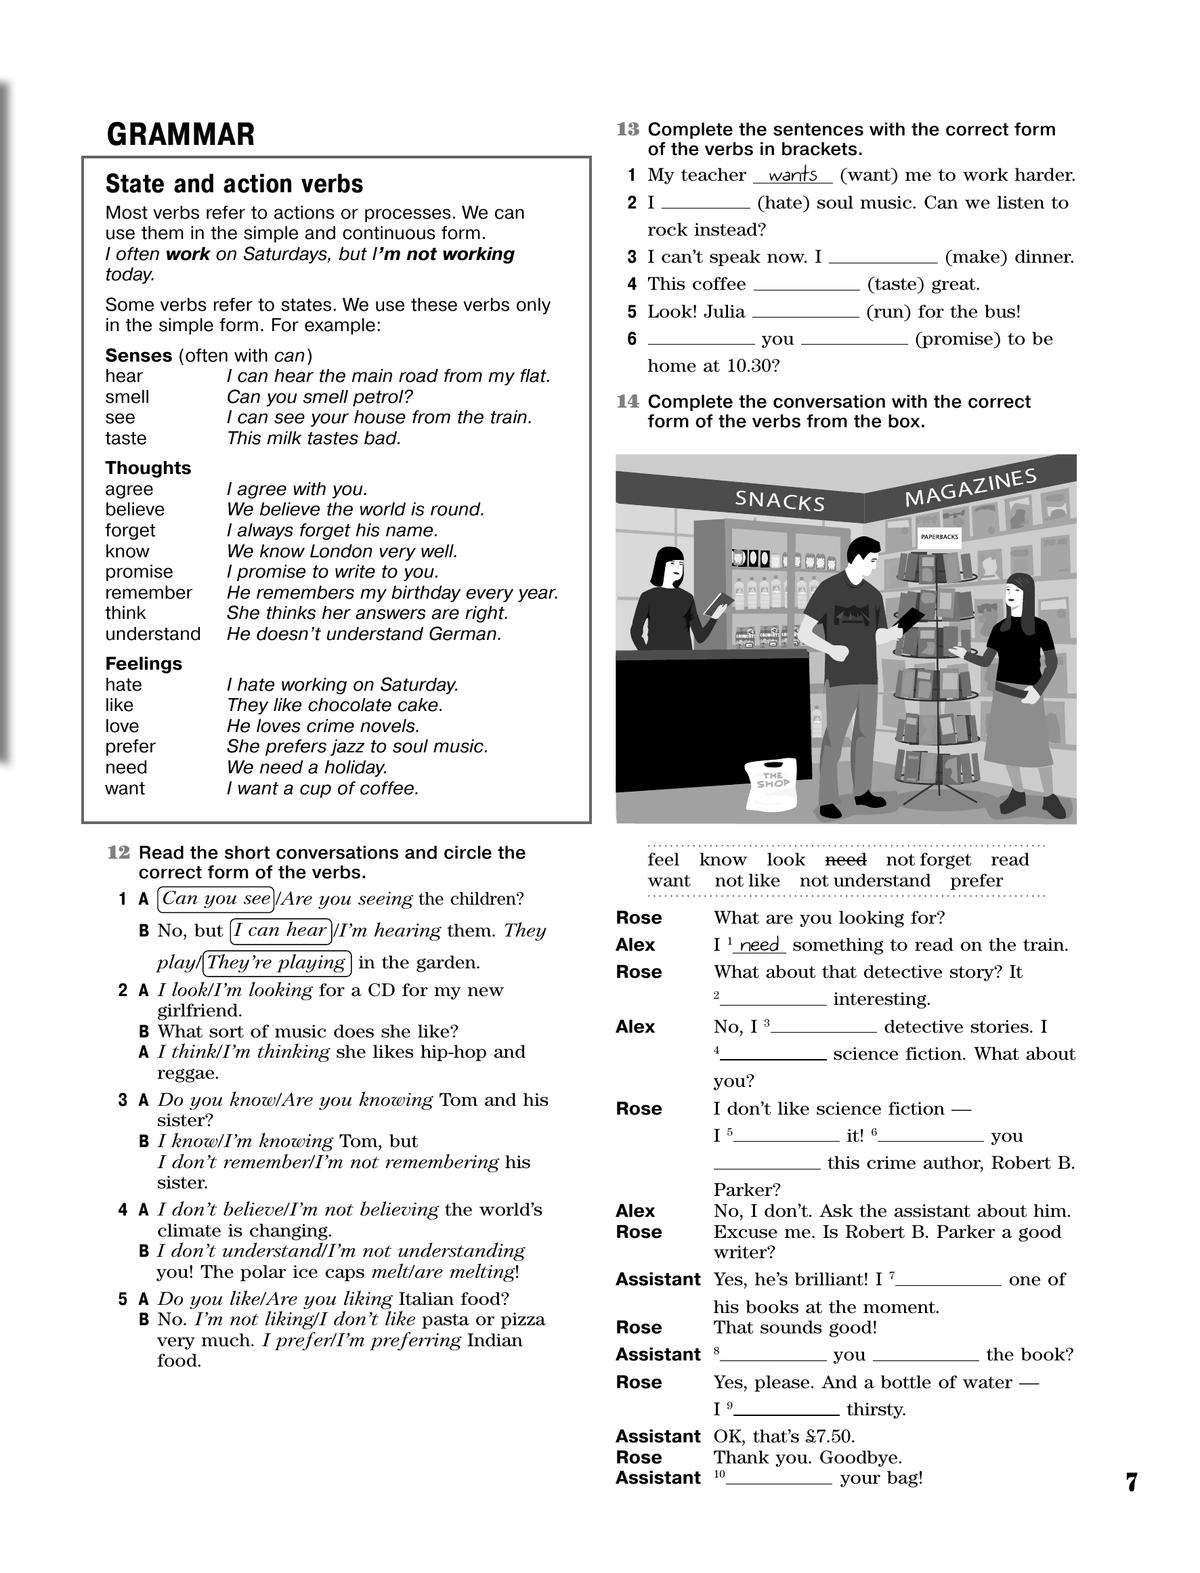 Английский язык. Рабочая тетрадь. 8 класс 9